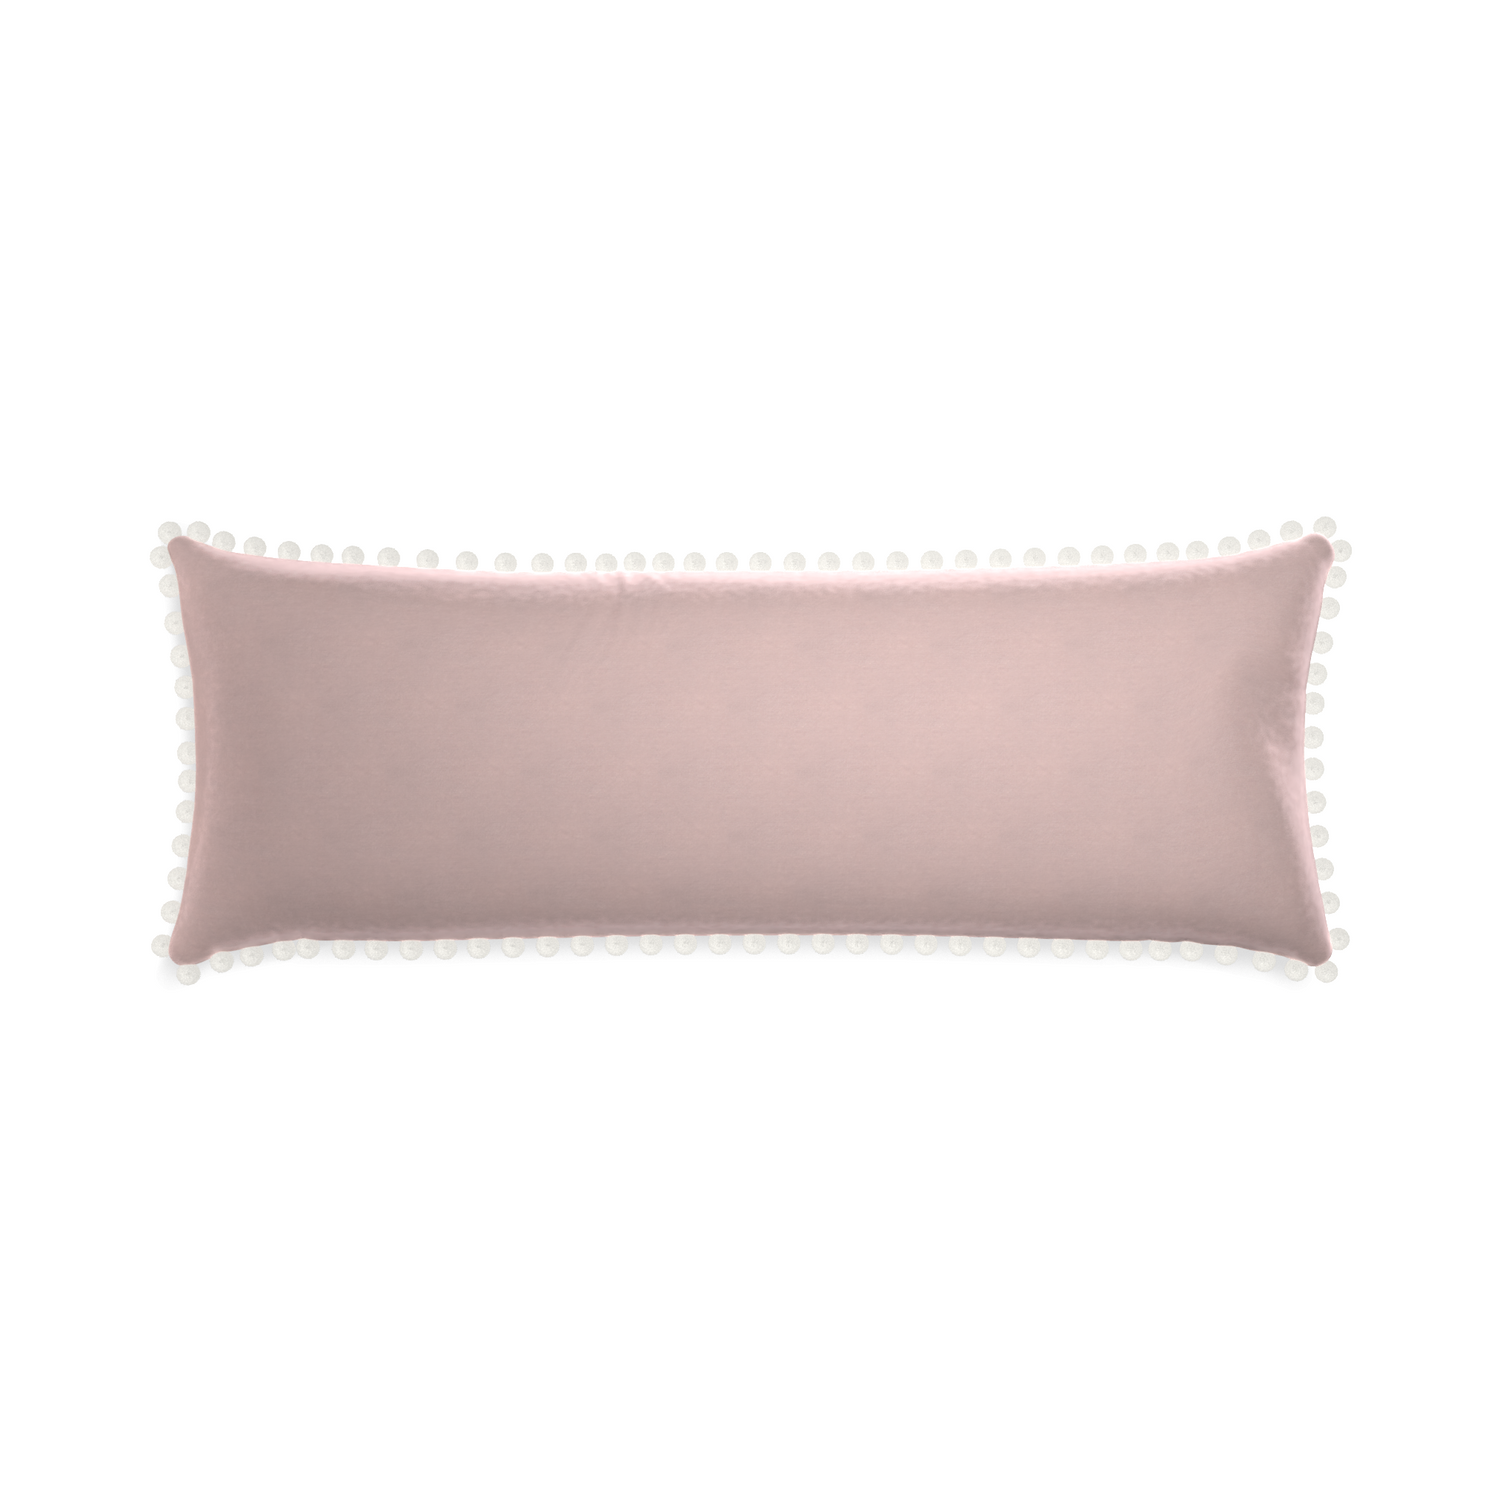 rectangle light pink velvet pillow with white pom poms